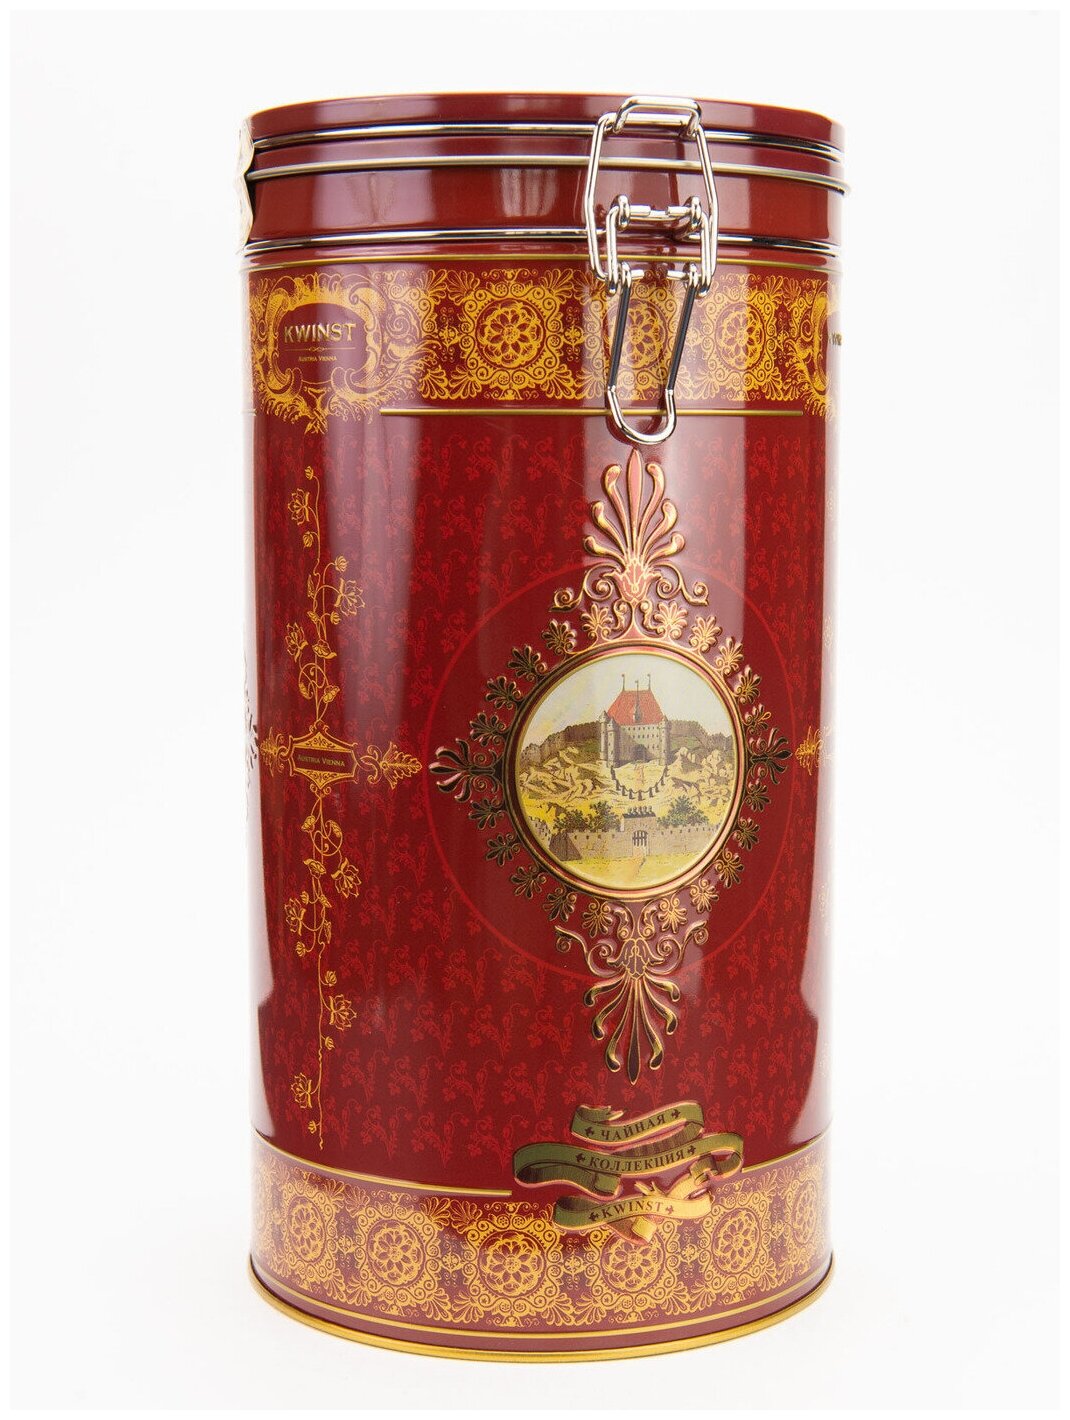 KWINST / Цейлонский черный чай в подарочной жестяной упаковке "Queen Коллекция", Шри Ланка, 400 гр